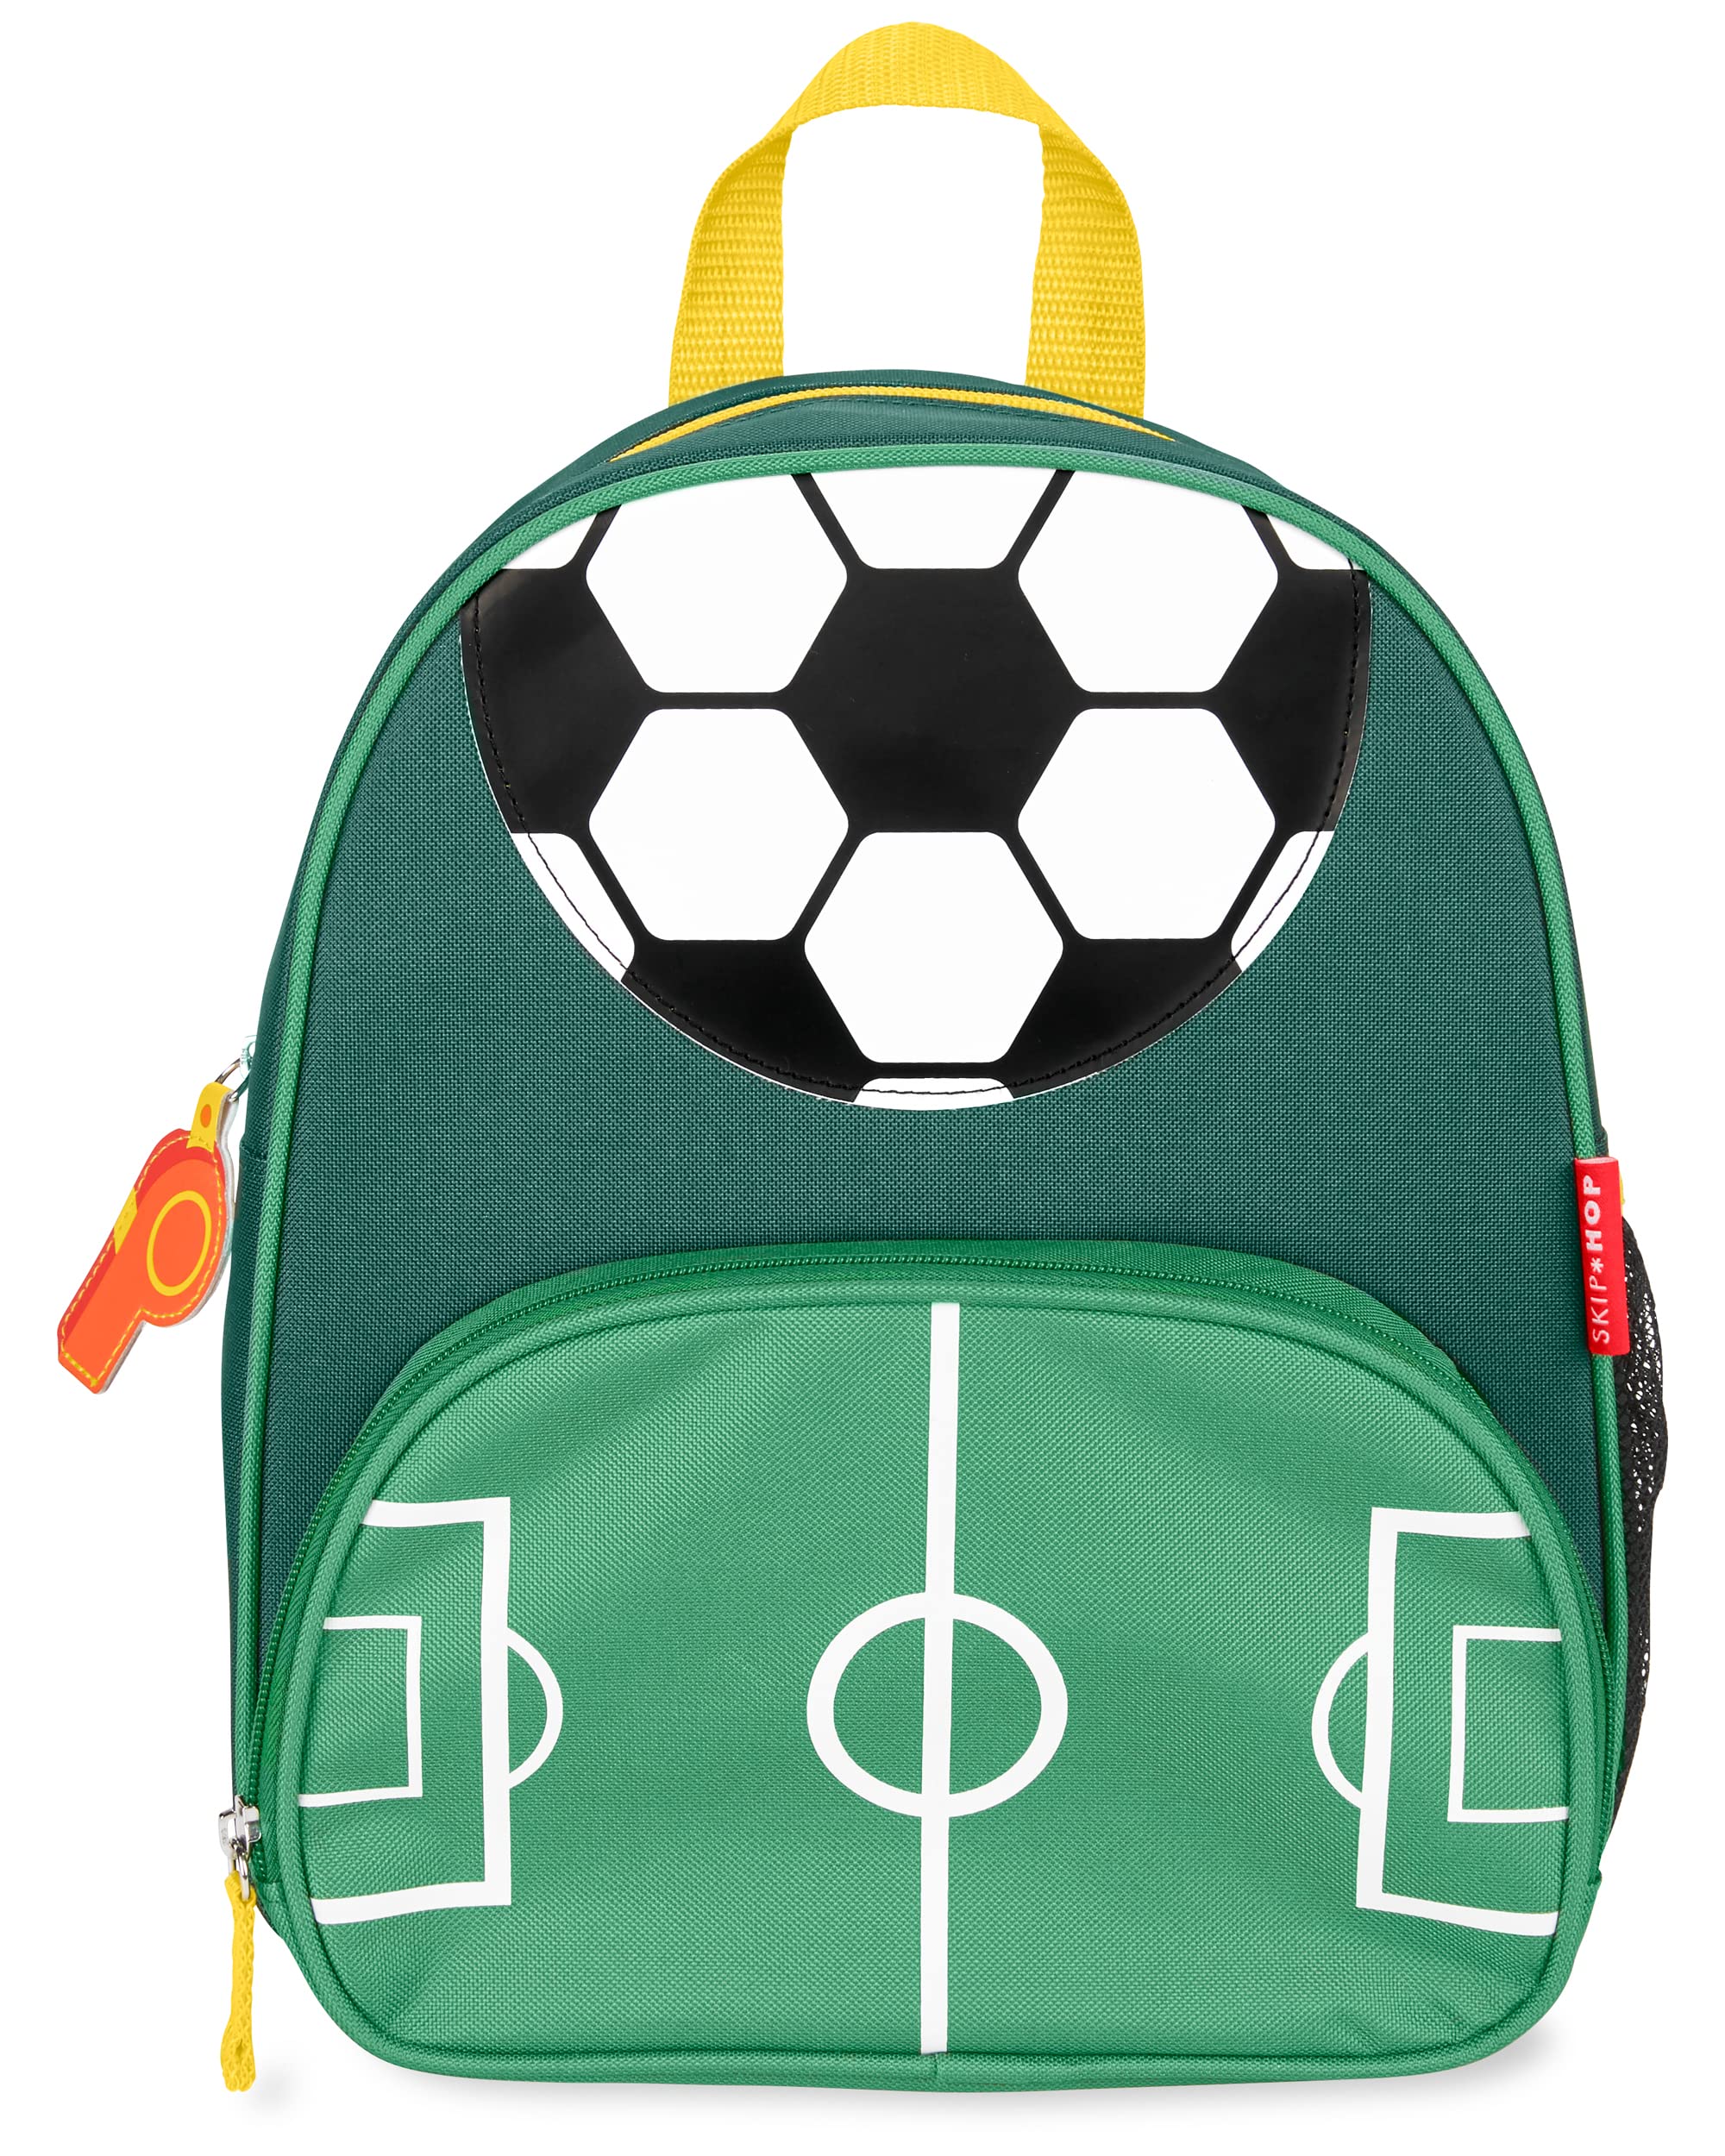 Skip Hop Sparks Little Kid's Backpack, Preschool Ages 3-4, Soccer